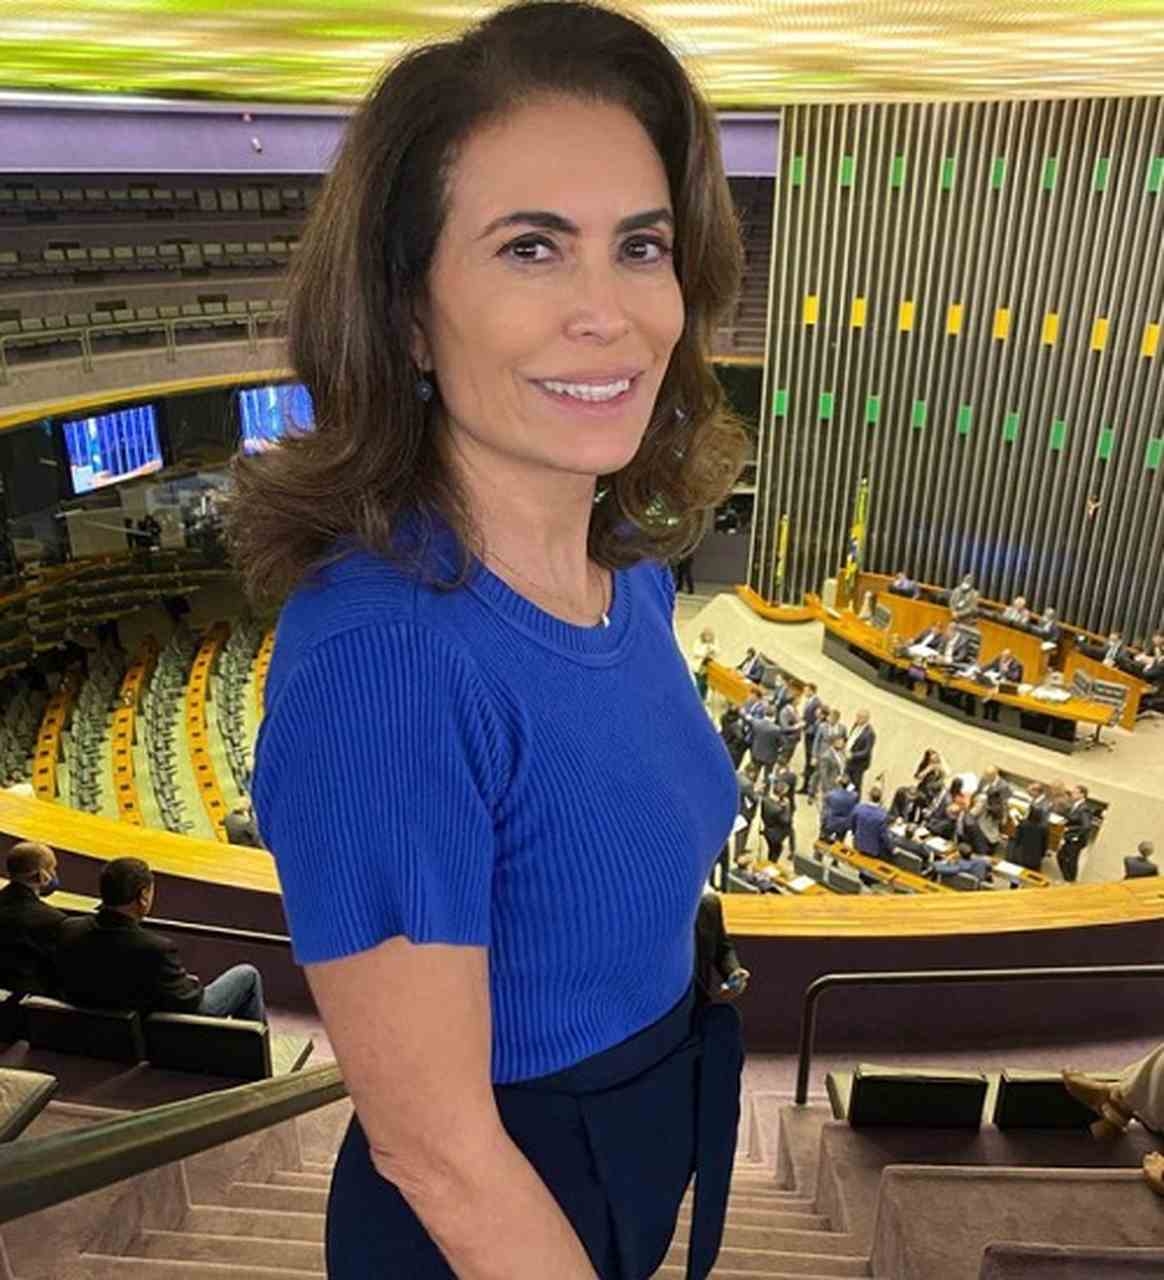 Um ano depois, em 2013, ela deu mais um grande passo na carreira, já que se tornou uma das apresentadoras do Bom Dia Brasil, um dos programas de maior prestígio da grade de Rede Globo.